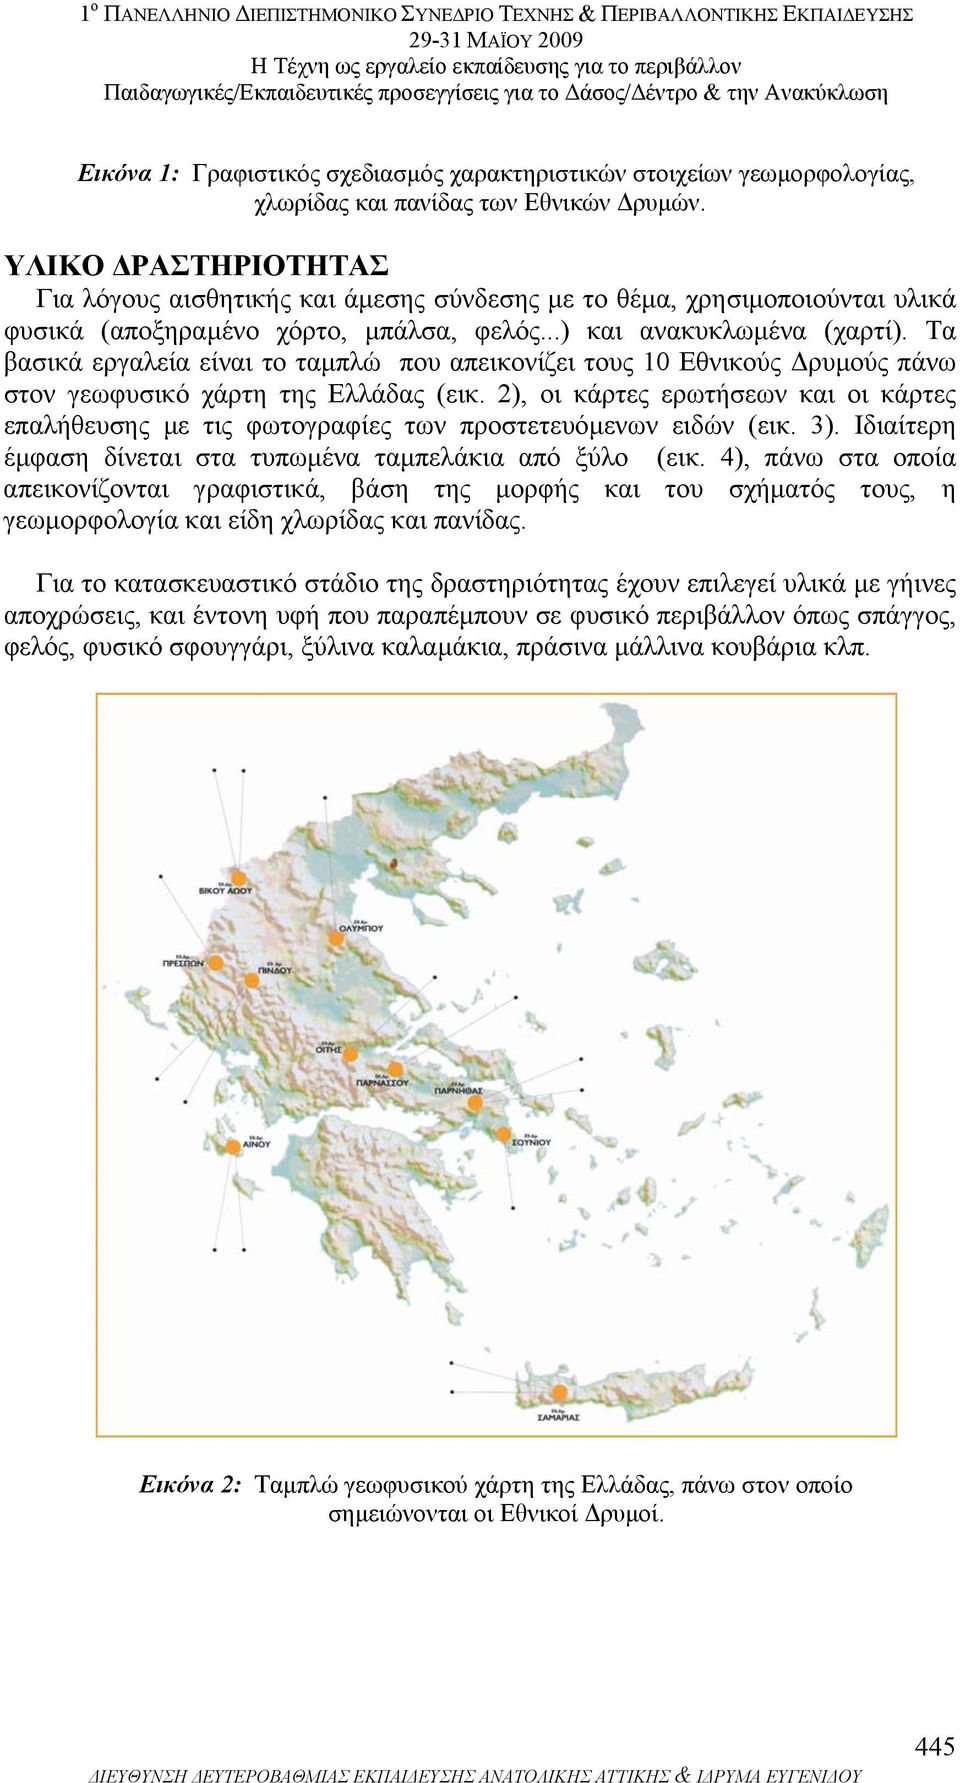 Τα βασικά εργαλεία είναι το ταµπλώ που απεικονίζει τους 10 Εθνικούς ρυµούς πάνω στον γεωφυσικό χάρτη της Ελλάδας (εικ.